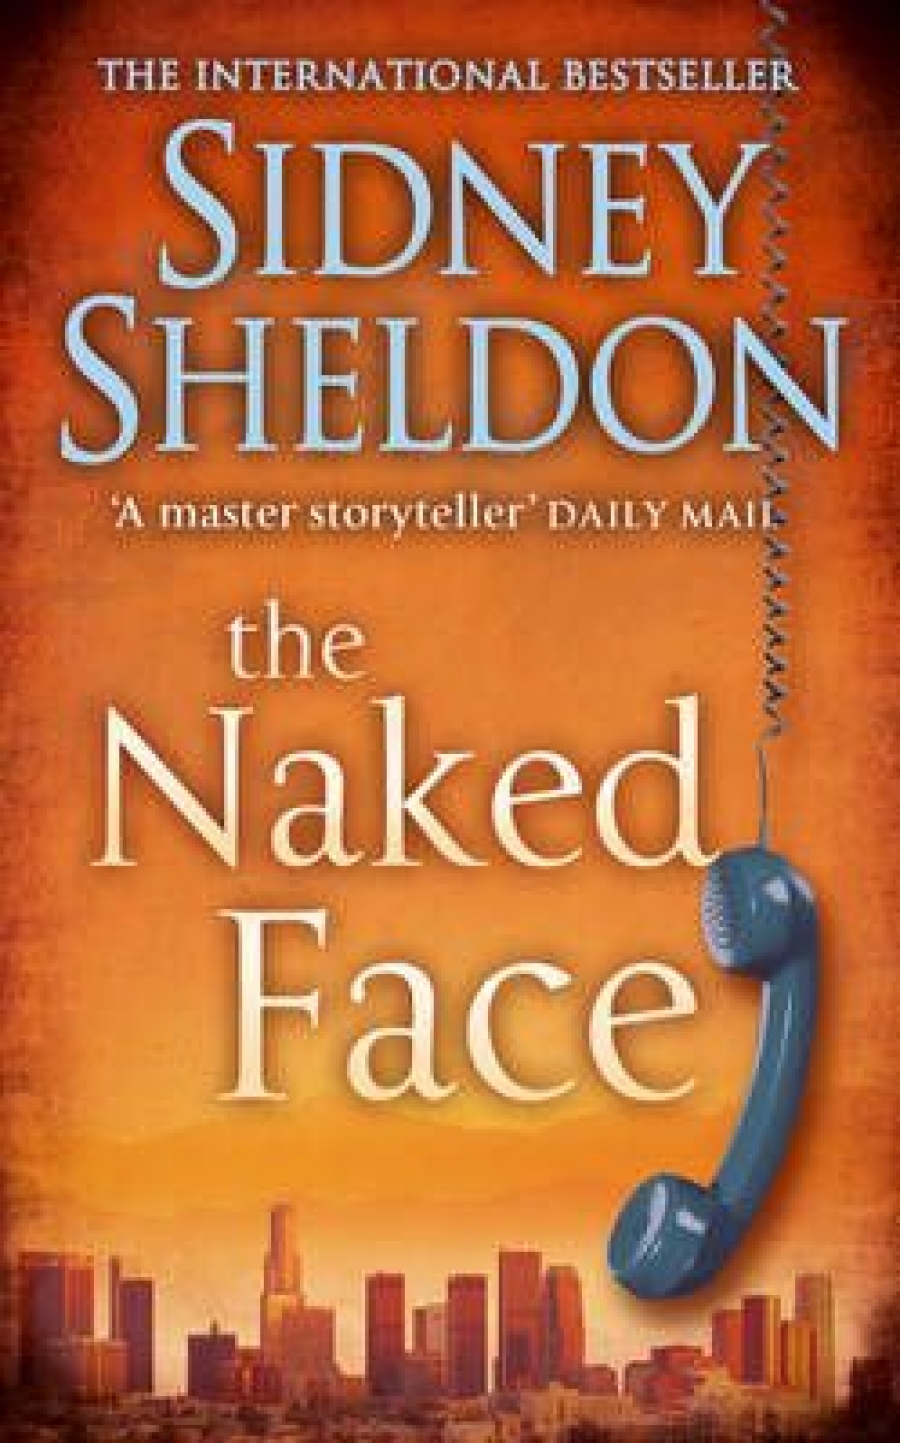 Sheldon Sidney Naked Face, The 